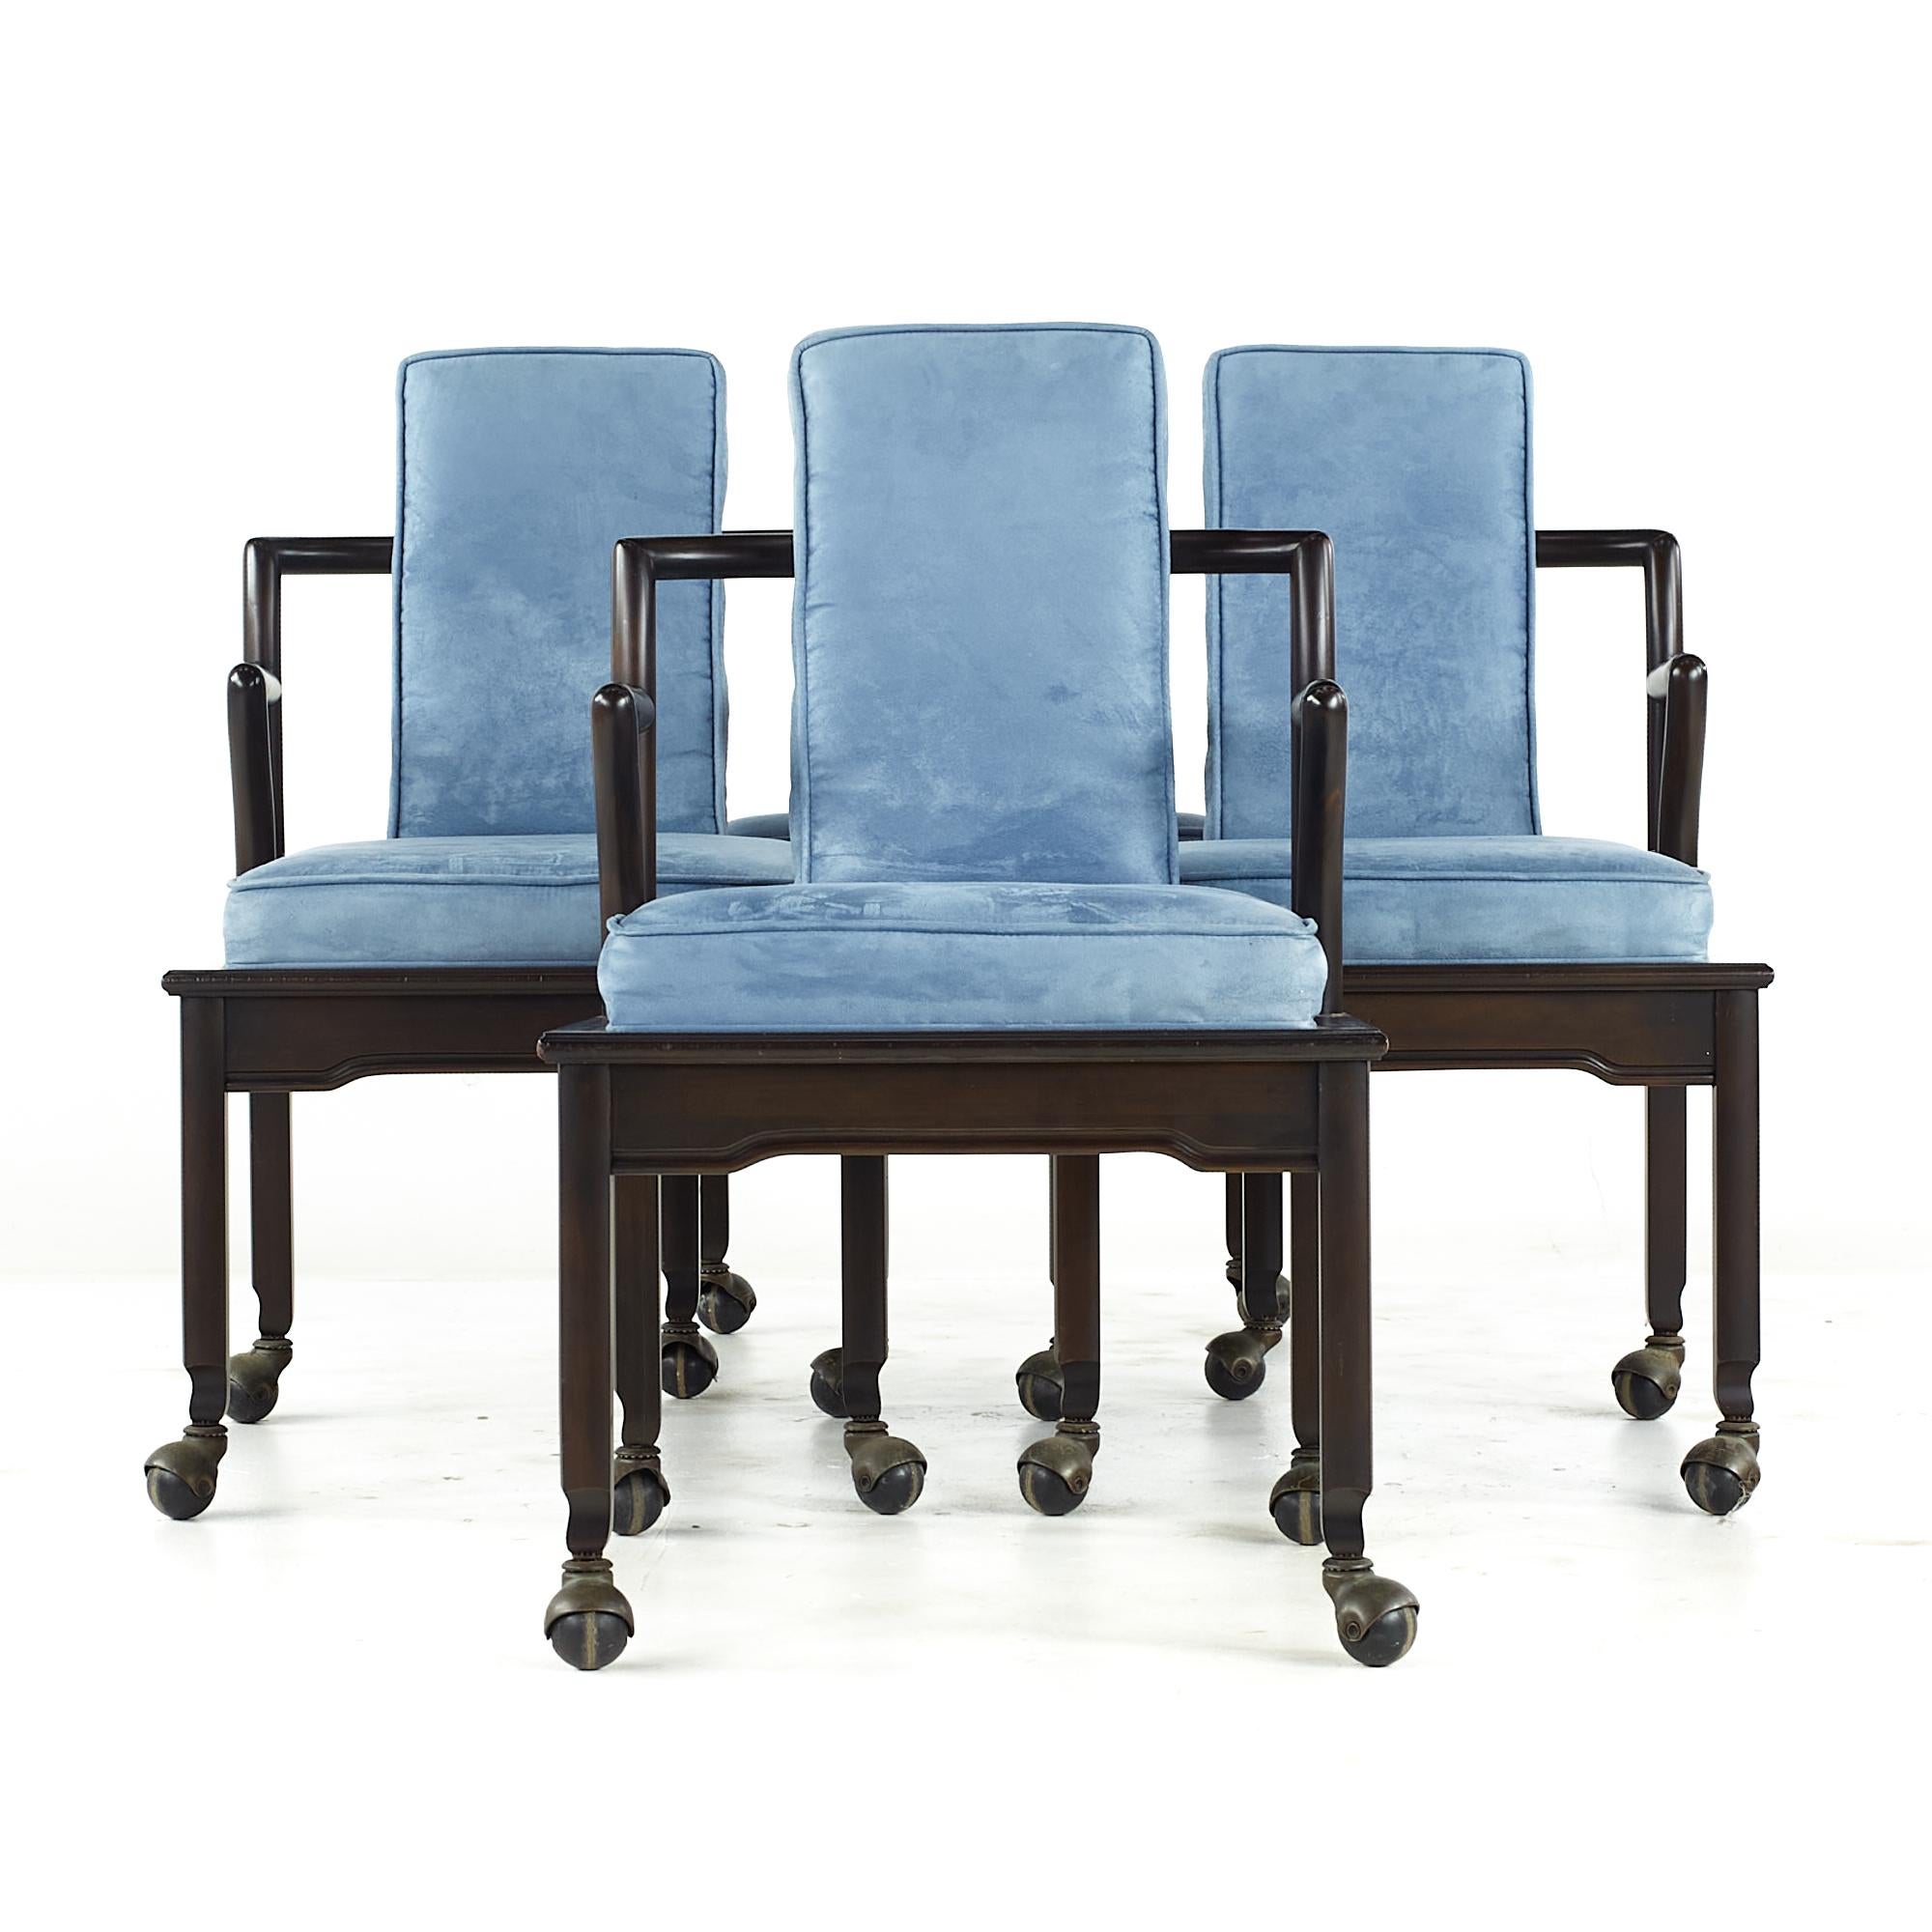 Widdicomb Mid Century Dining Chairs - Set of 4

Chaque chaise mesure : 21 de large x 22 de profond x 34 de haut, avec une hauteur d'assise de 18,5 et une hauteur d'accoudoir de 24,5 pouces.

Tous les meubles peuvent être achetés dans ce que nous